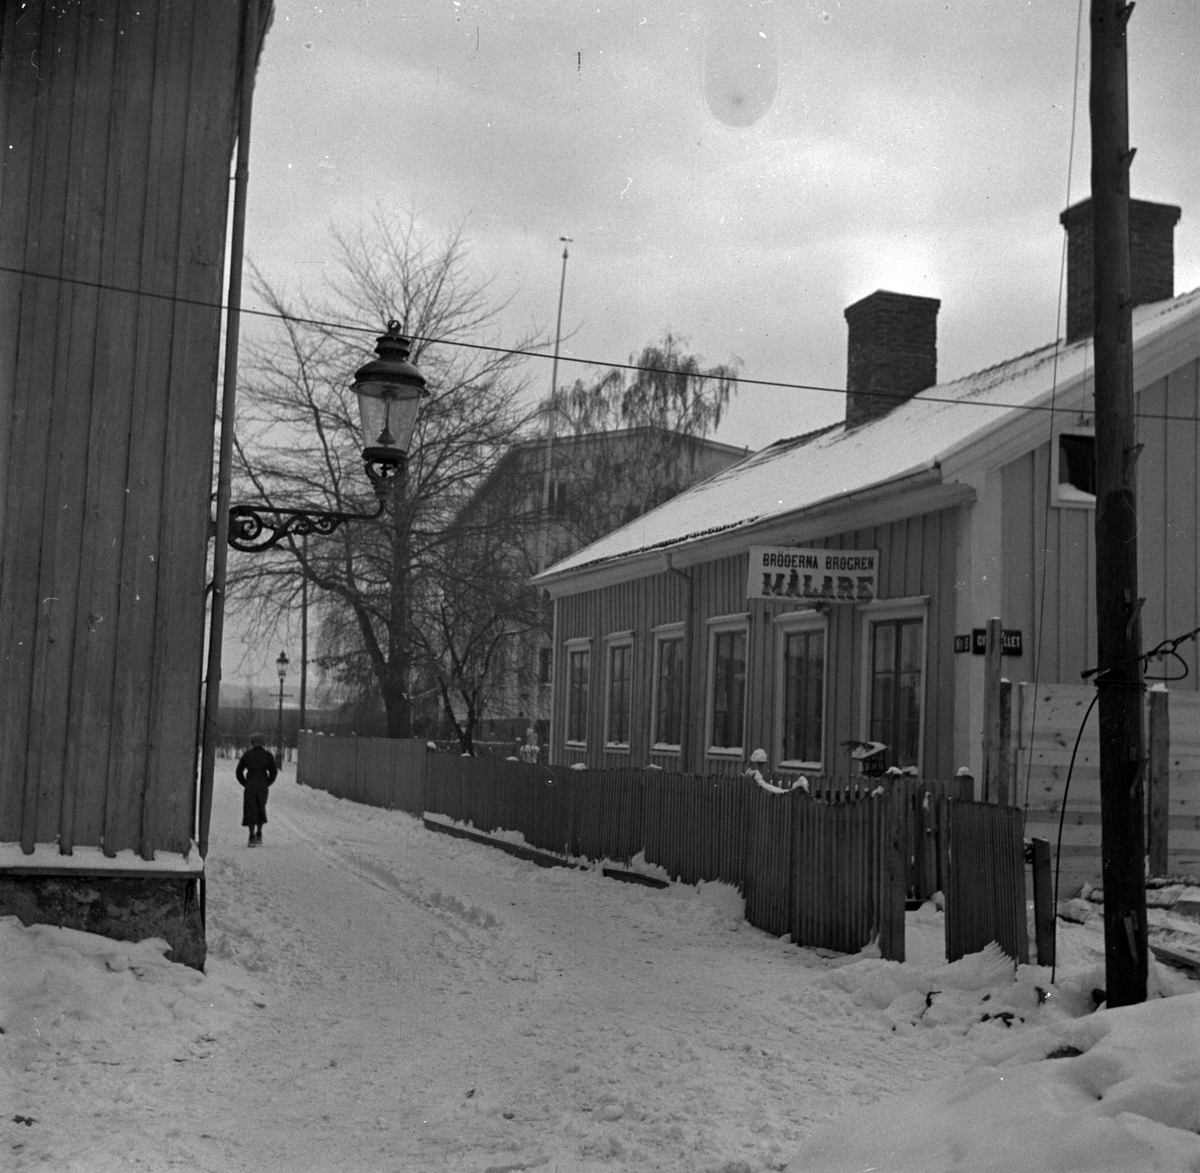 Gatukorsning i Jönköping 1947/48. På skylten står "Bröderna Brogren Målare"